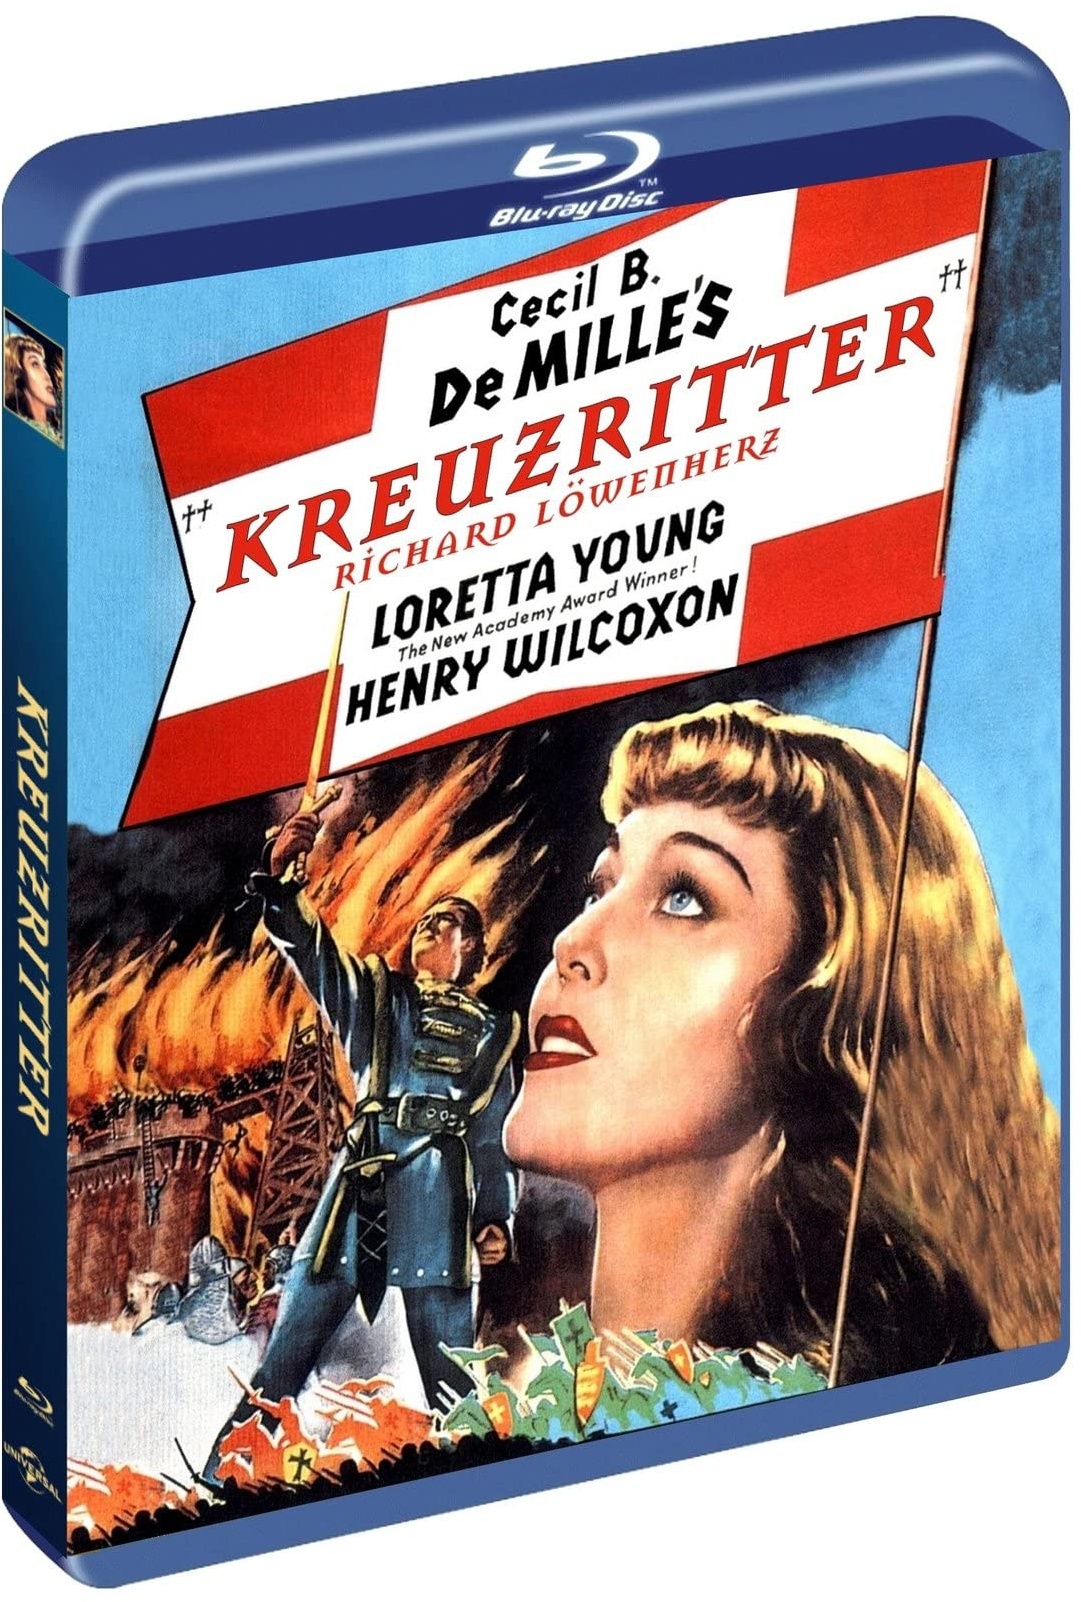 Kreuzritter - Richard Löwenherz (1935) - Cover A - Cecil B. DeMille's opulent ausgestattetes Historienabenteuer als deutsche Blu-ray Premiere - Mit Loretta Young und Henry Wilcoxon (Neu differenzbesteuert)